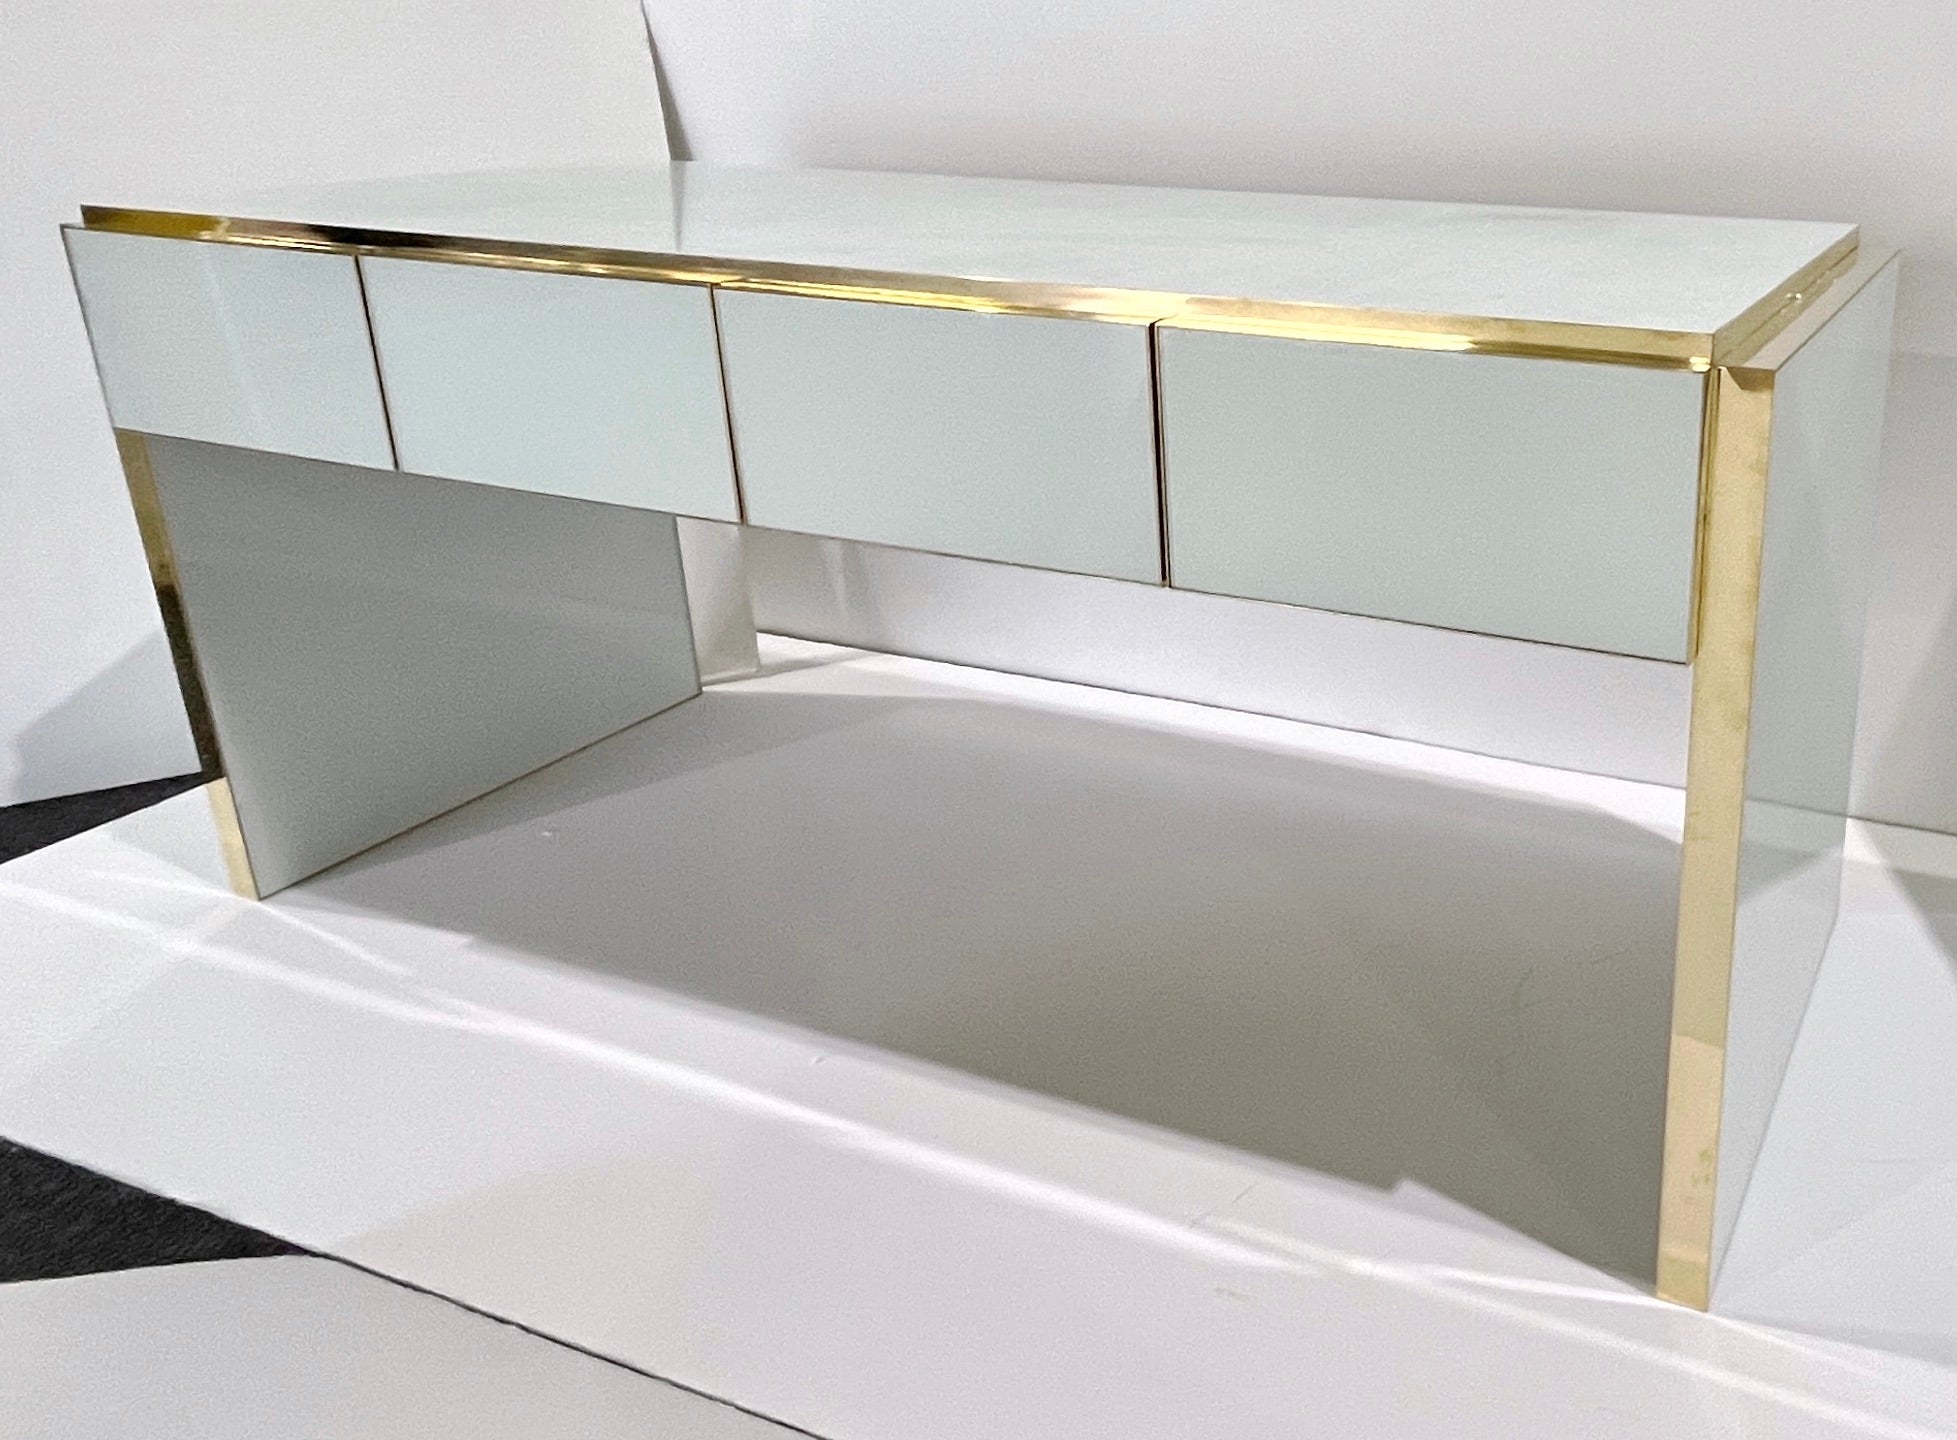 Bureau / console moderne contemporain personnalisable à 4 tiroirs entièrement fabriqué à la main en Italie, avec un design Art-Deco minimaliste, le pourtour décoré de verre d'art dans une couleur blanche minimaliste saisissante. Ce bureau, élevé sur